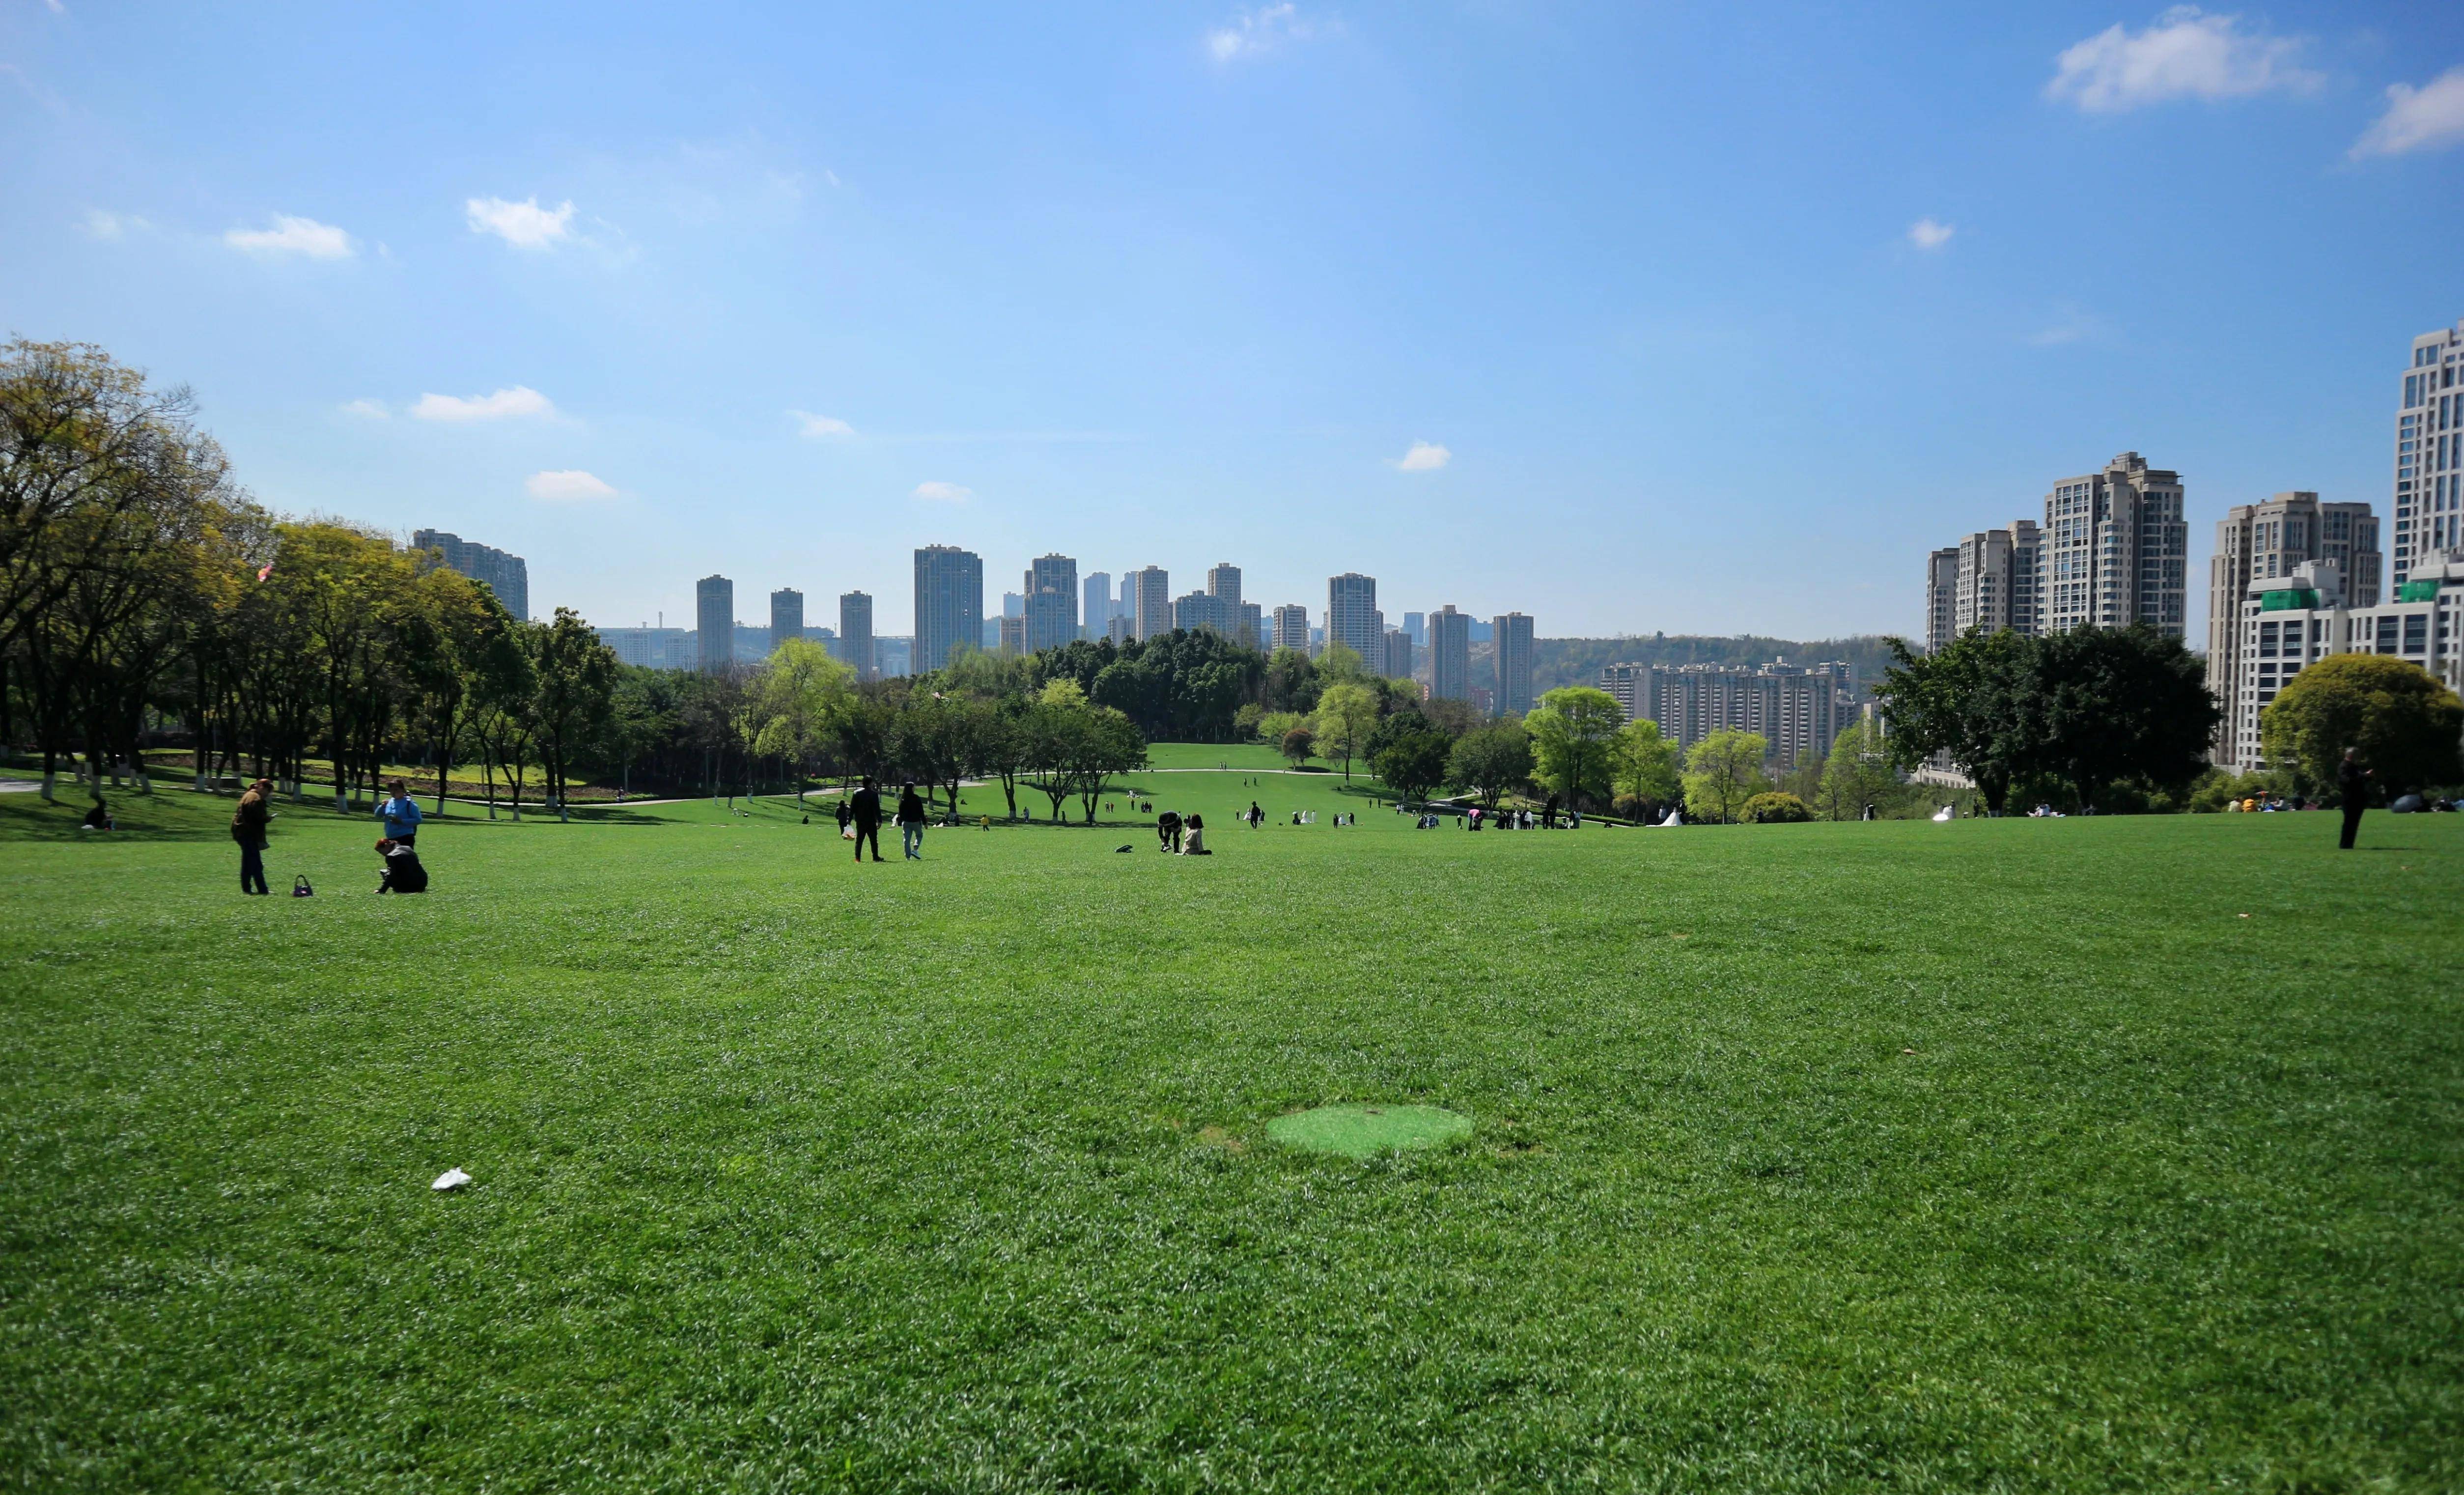 全是大草坪,重庆中央公园太适合春游了(攻略)